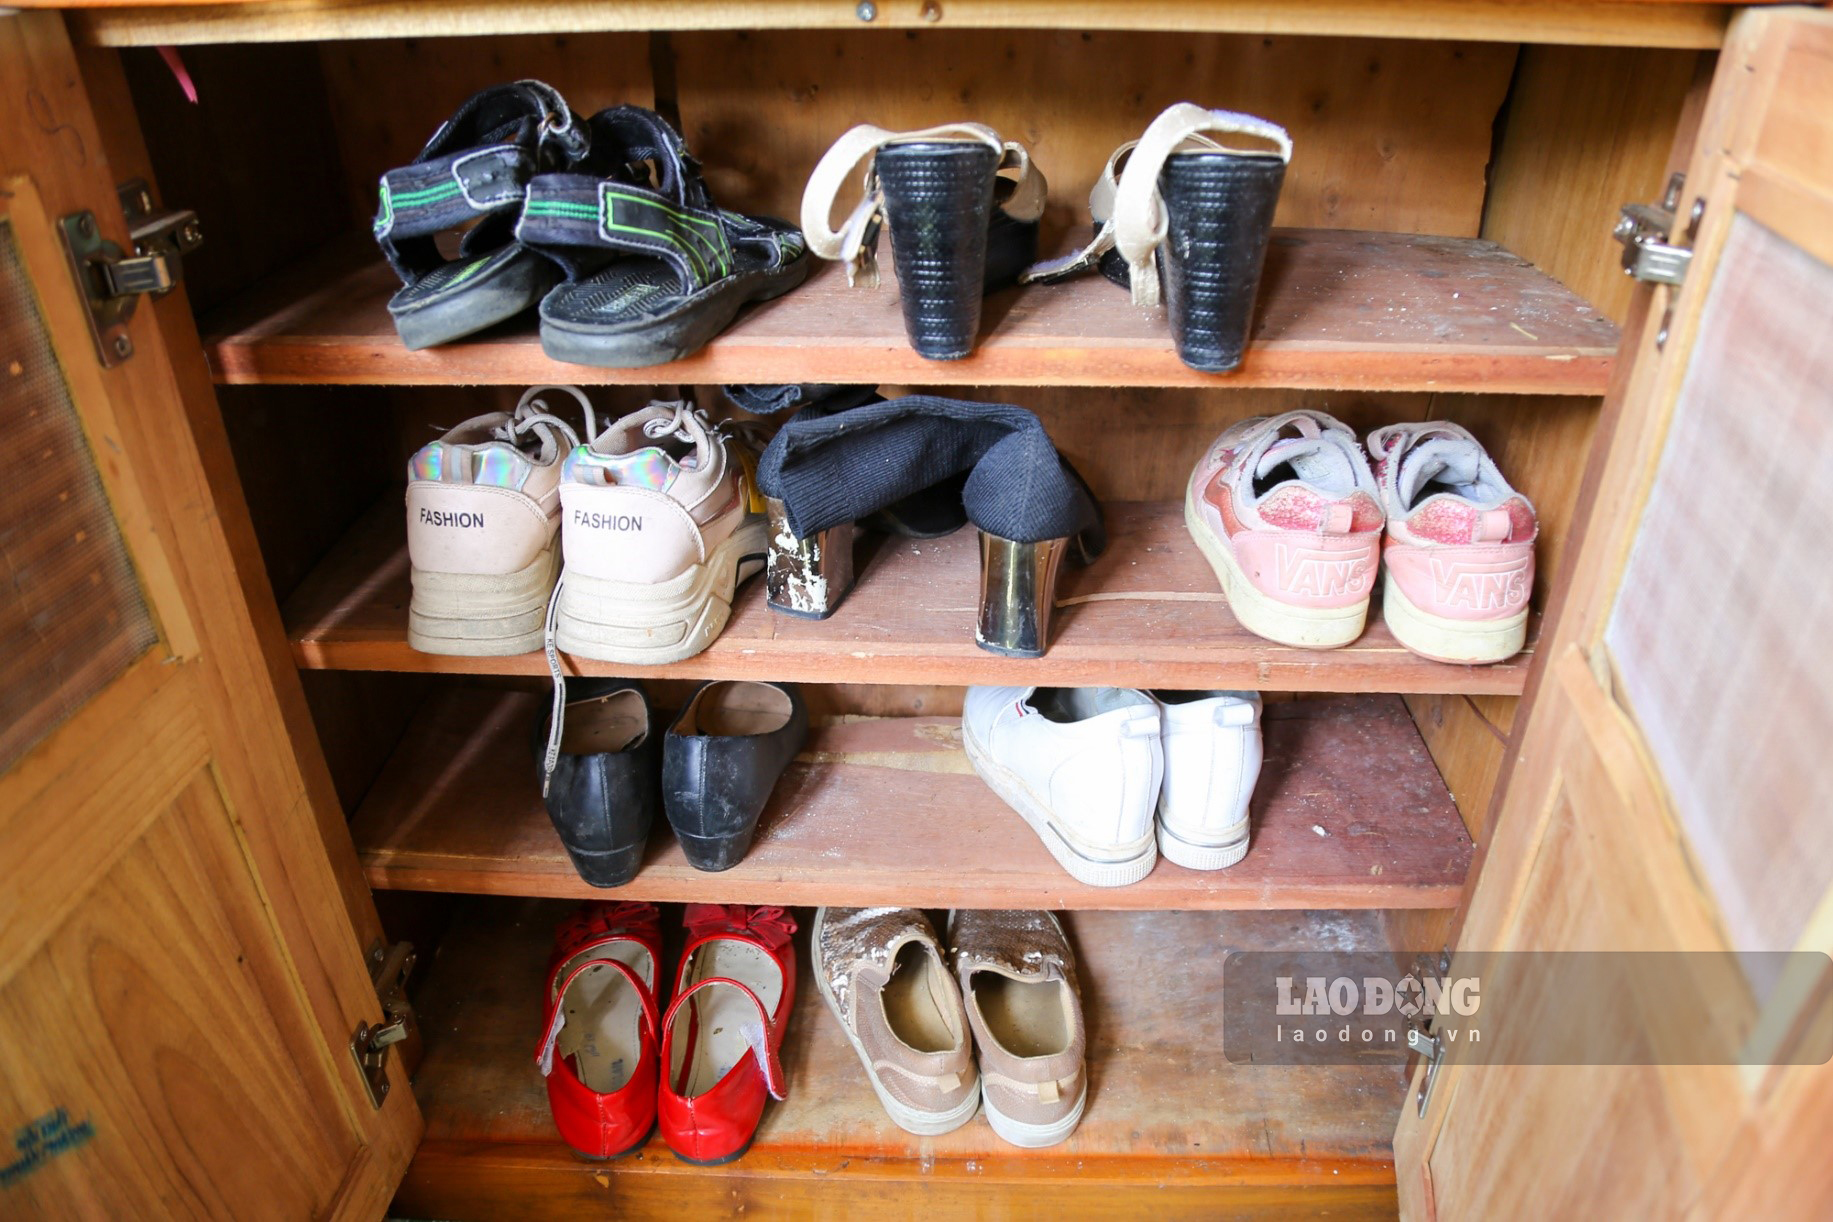 Không chỉ quần áo, giày dép cũng được để trong gian hàng cho những ai cần đến lấy.